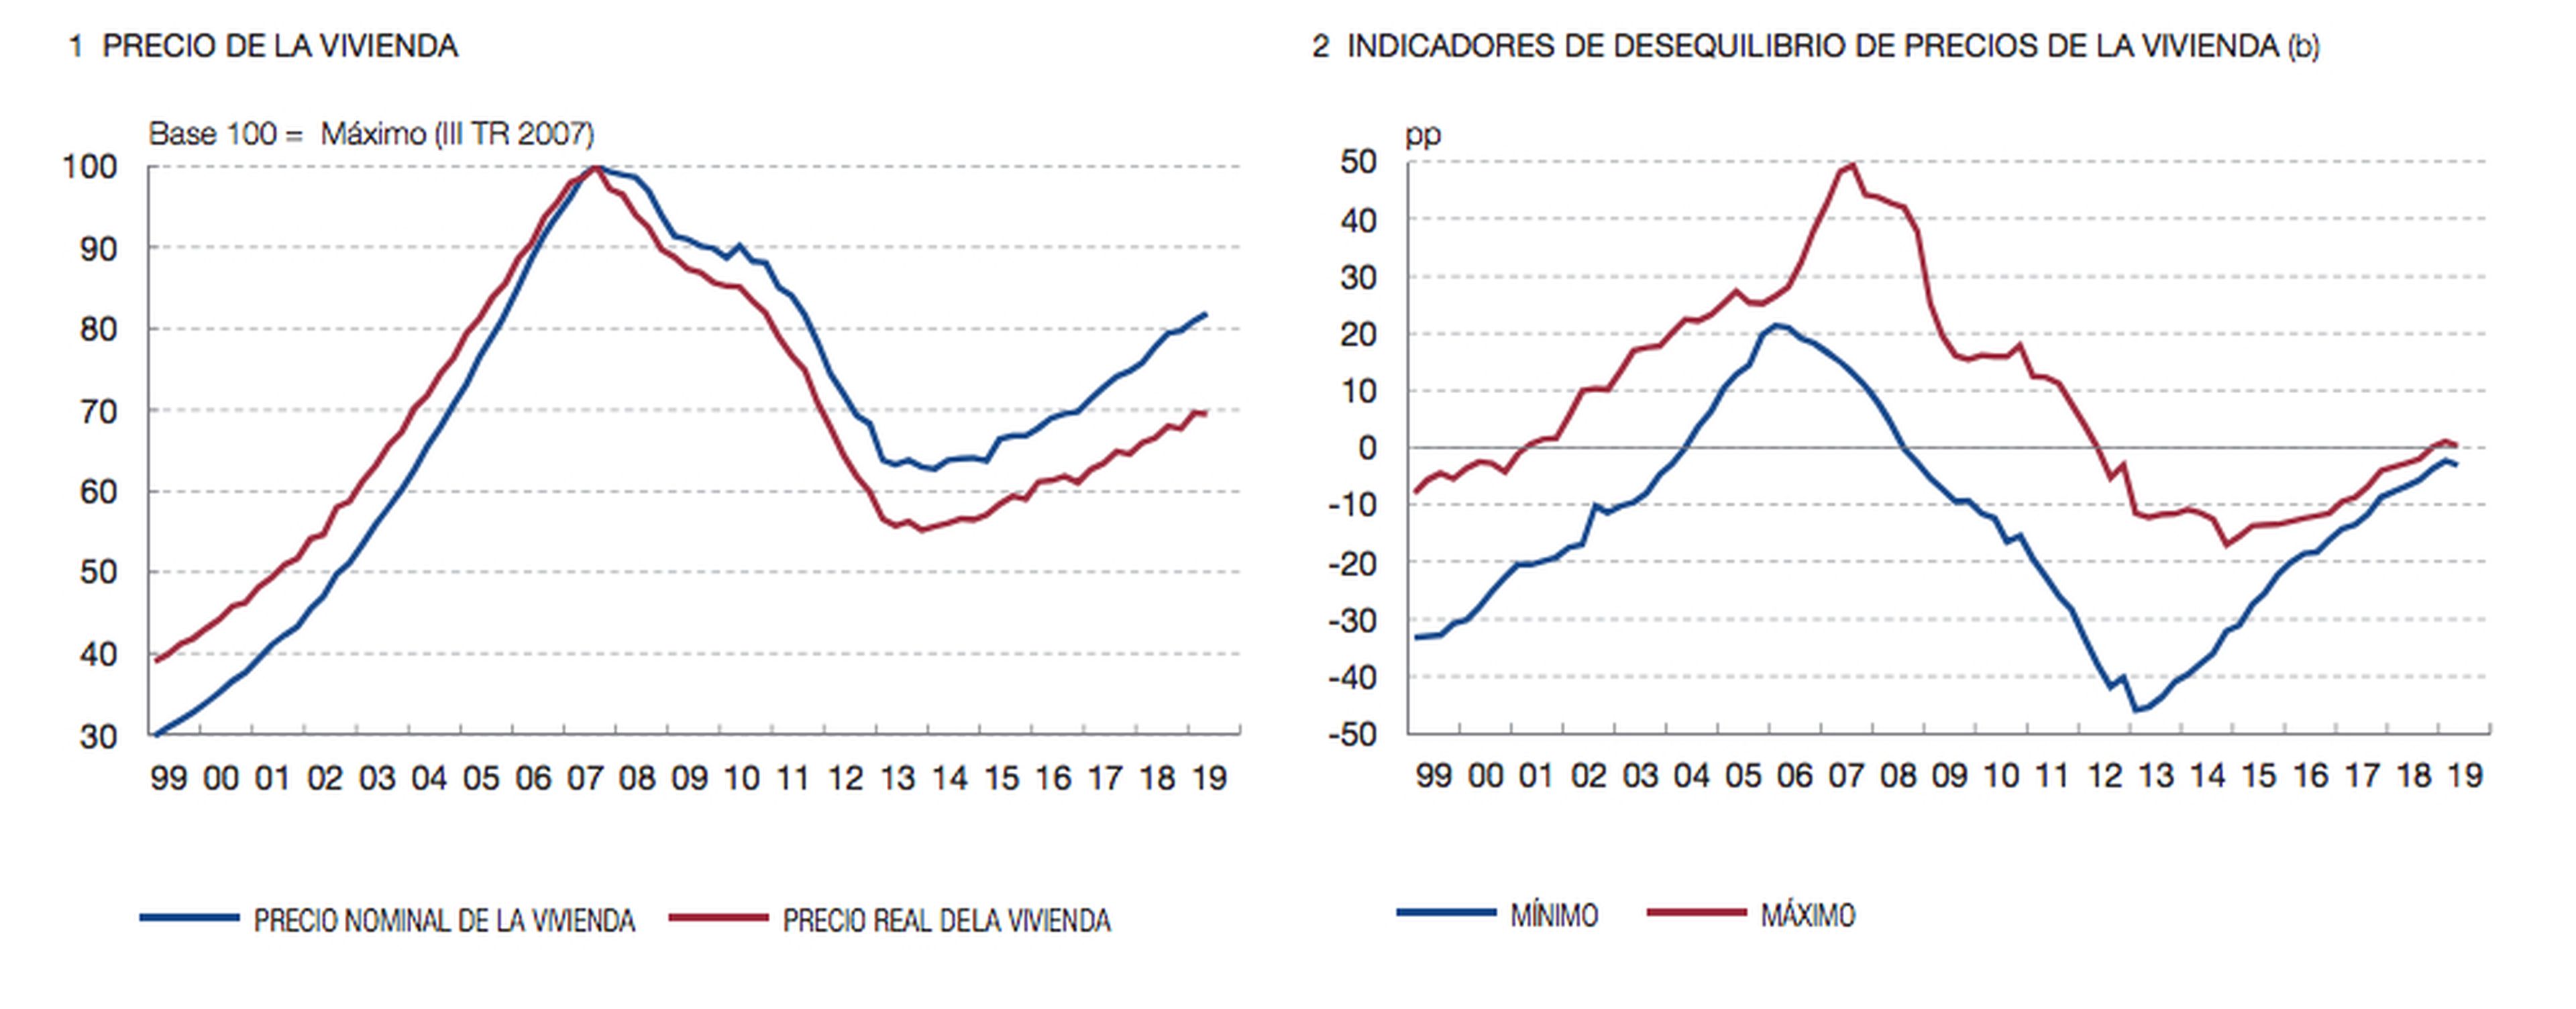 Indicadores de precio de vivienda y sus desequilibrios, según el Banco de España